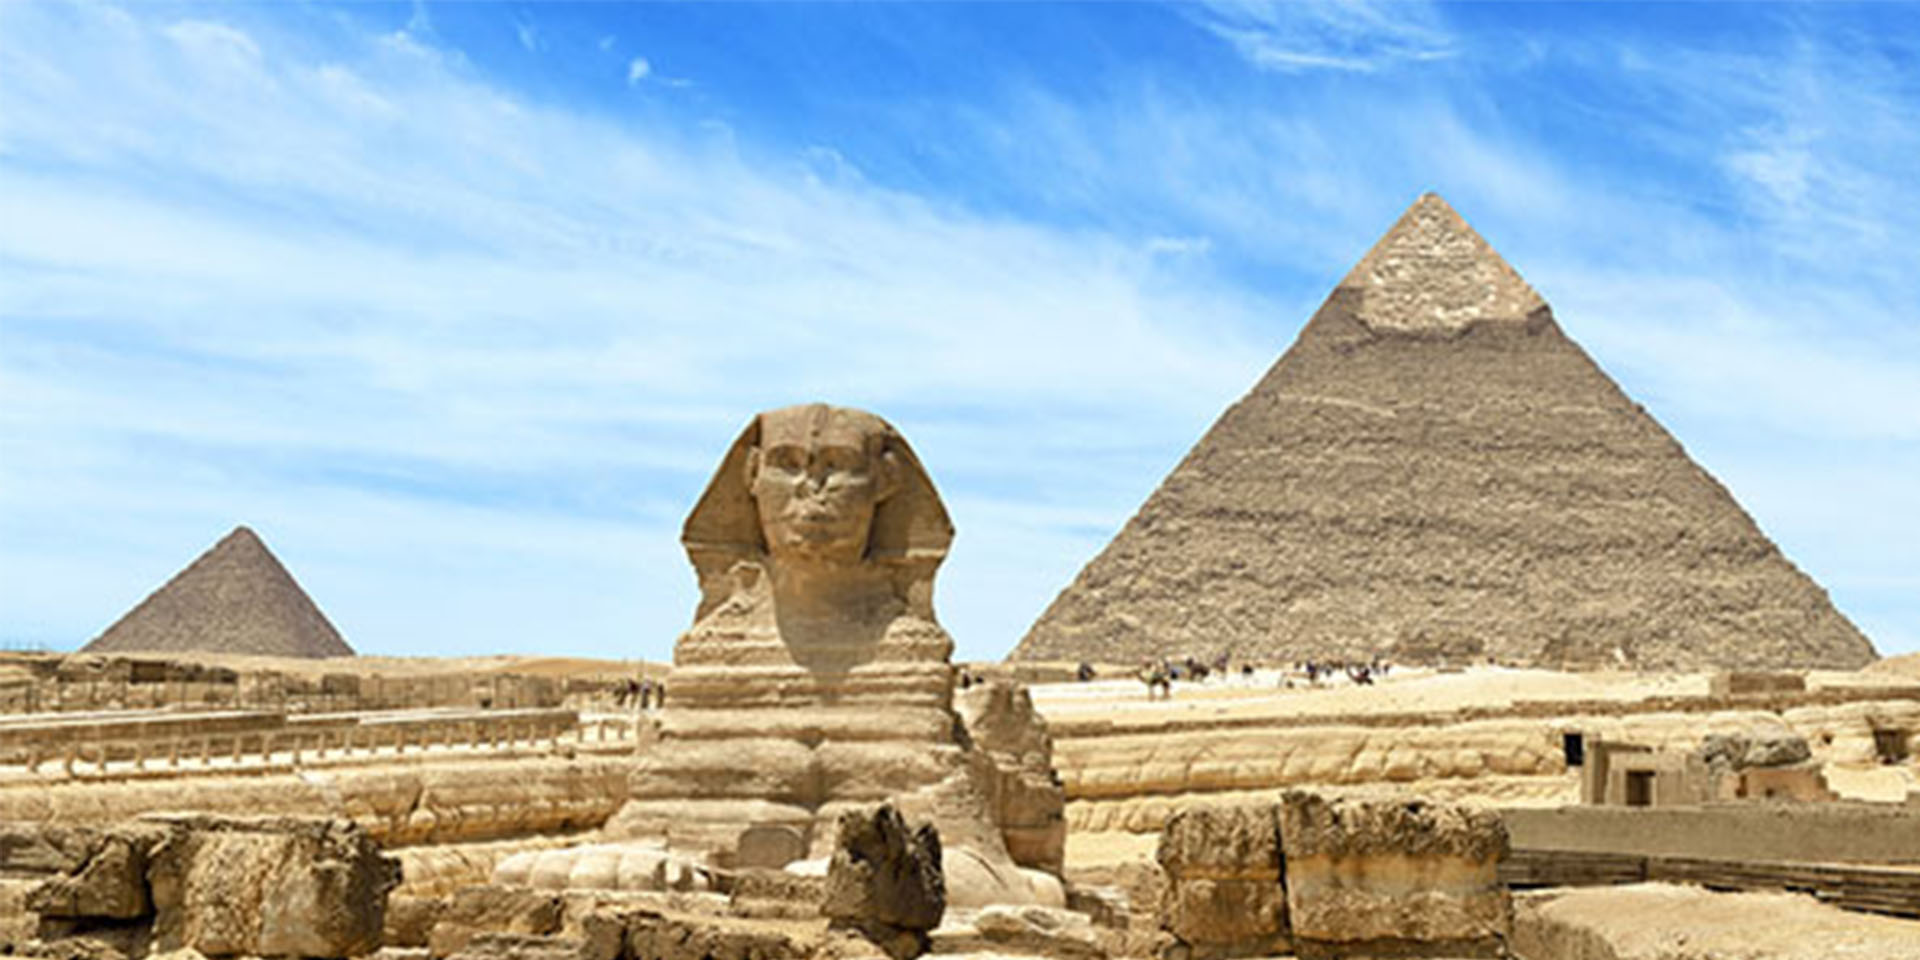 Las pirámides de Egipto es una de las Siete Maravillas del mundo